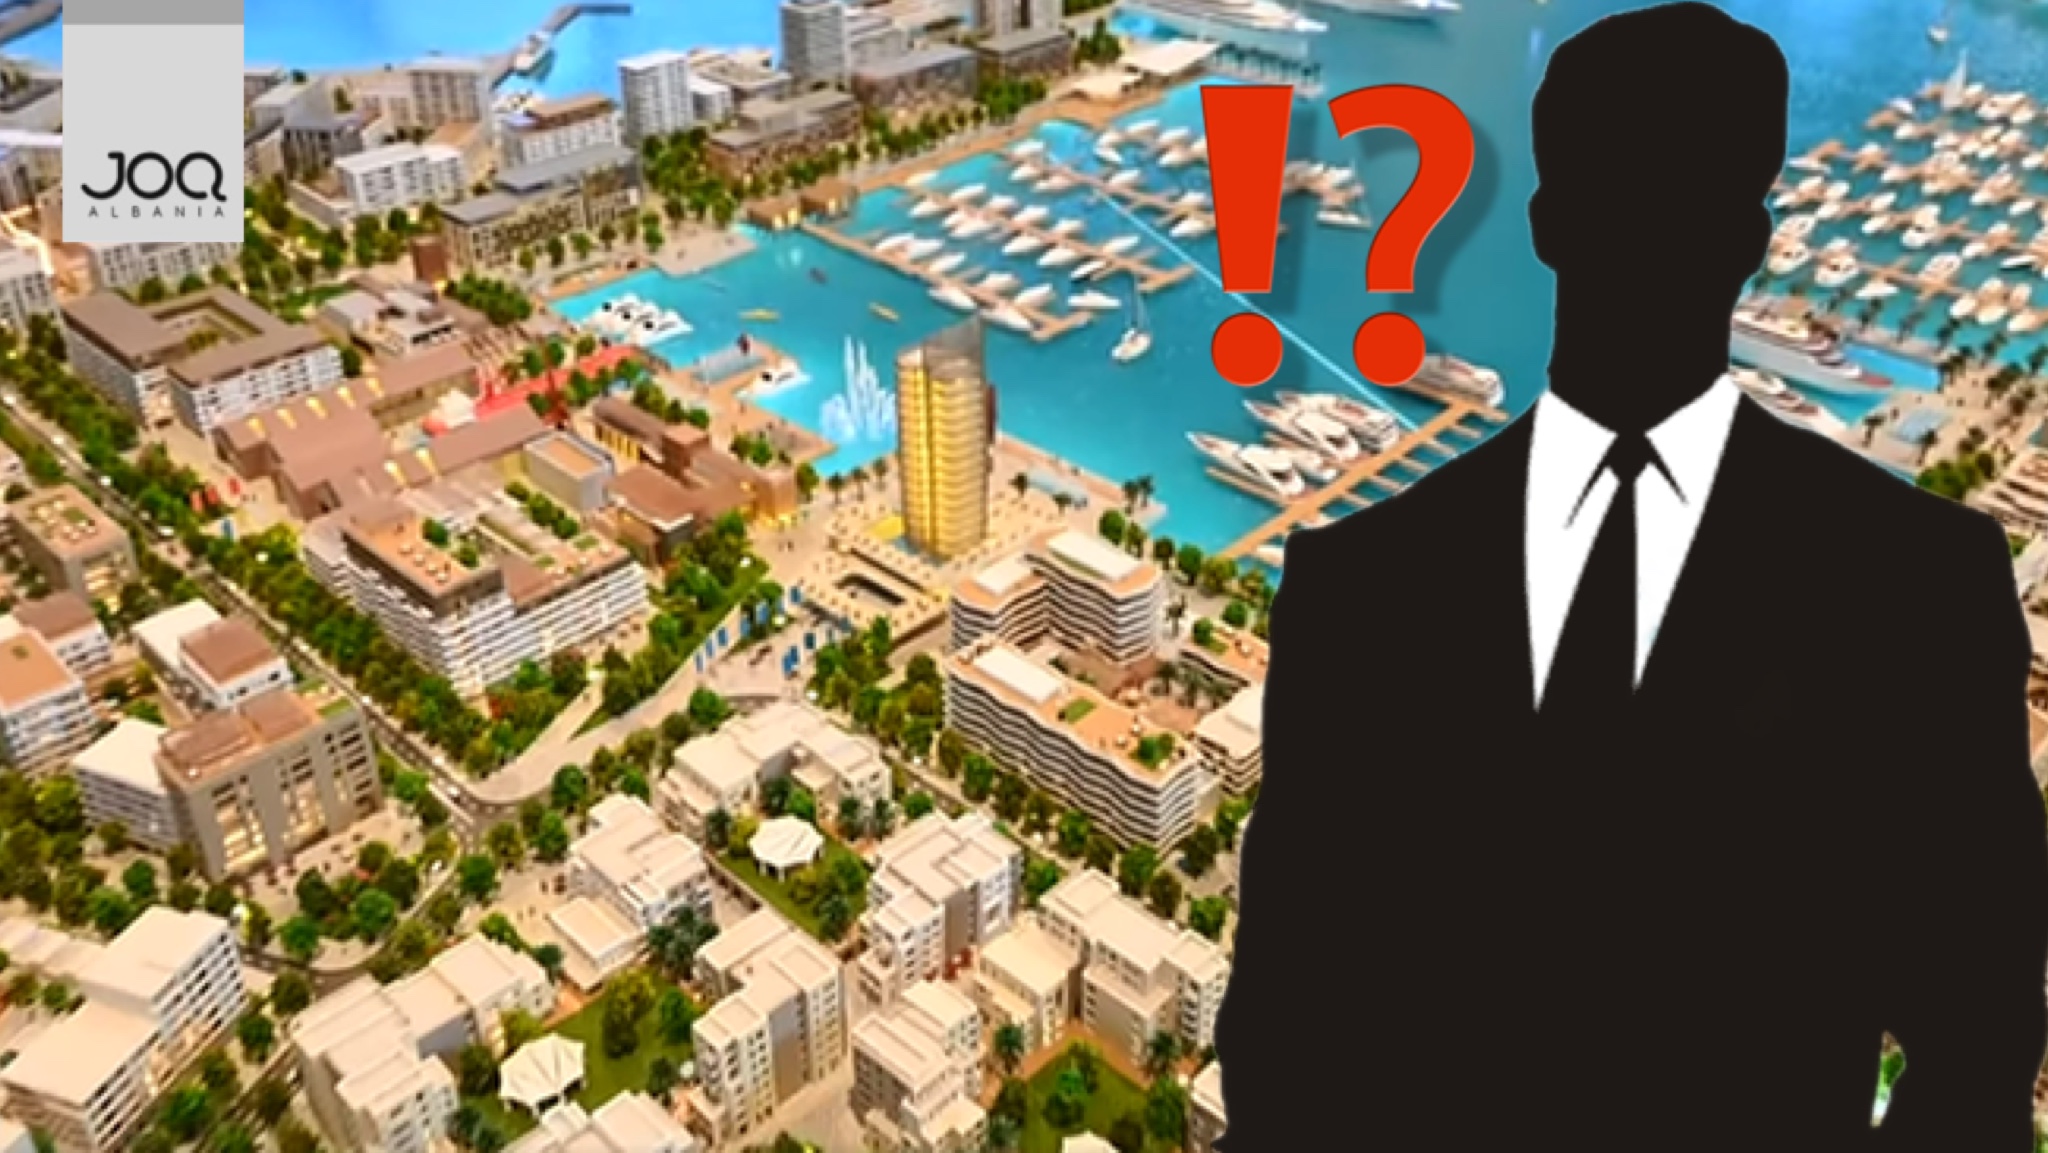 Do ndërtojë 12.600 apartamente luksoze me 1€/ Oligarku i Portit të Durrësit do përfitojë 3.2 MLD €